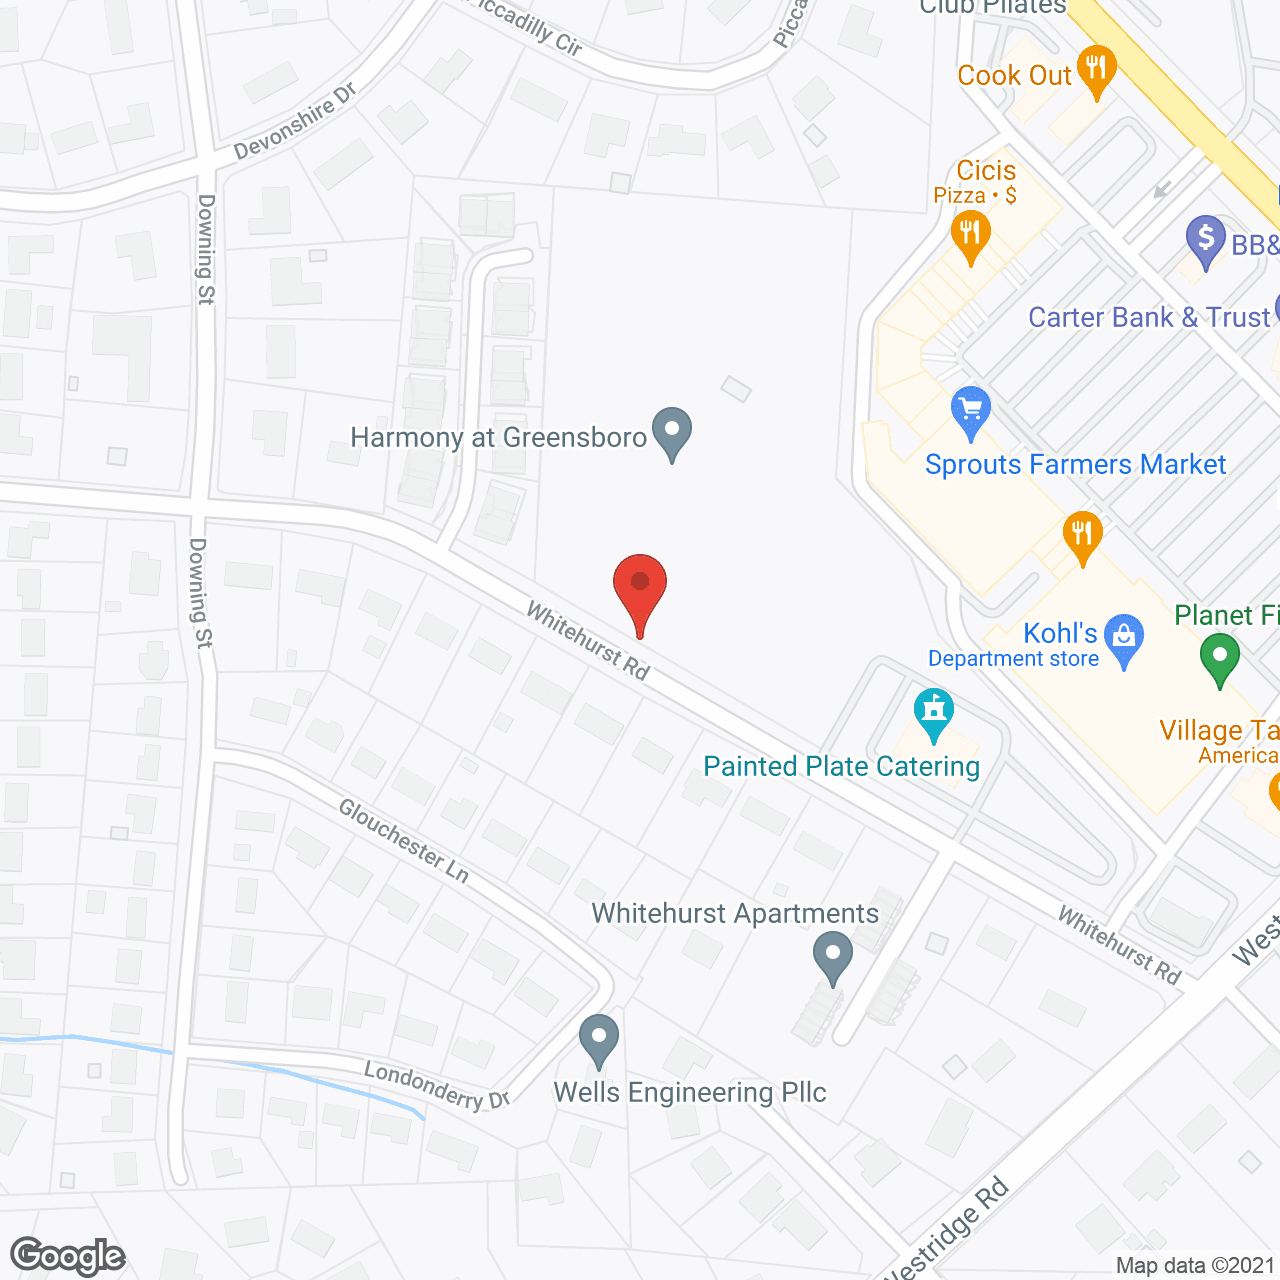 Harmony at Greensboro in google map